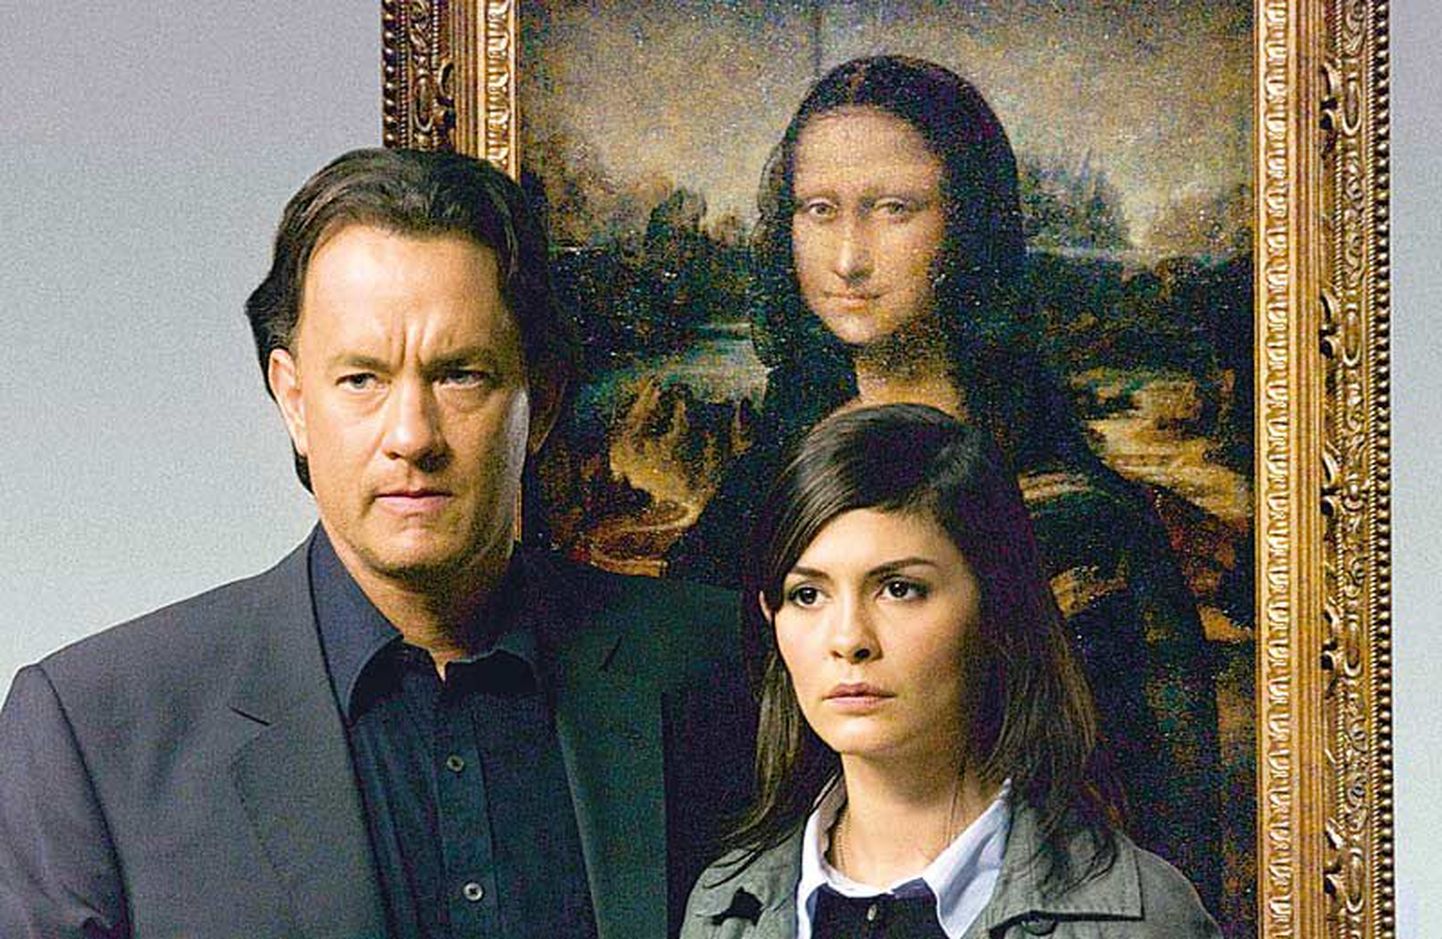 Dan Browni «Da Vinci koodi» müüdi miljoneid enne, kui selle kohta ilmus kirjanduskriitikat. Hollywood tõttas raamatust filmi väntama, saades peaossa Tom Hanksi.